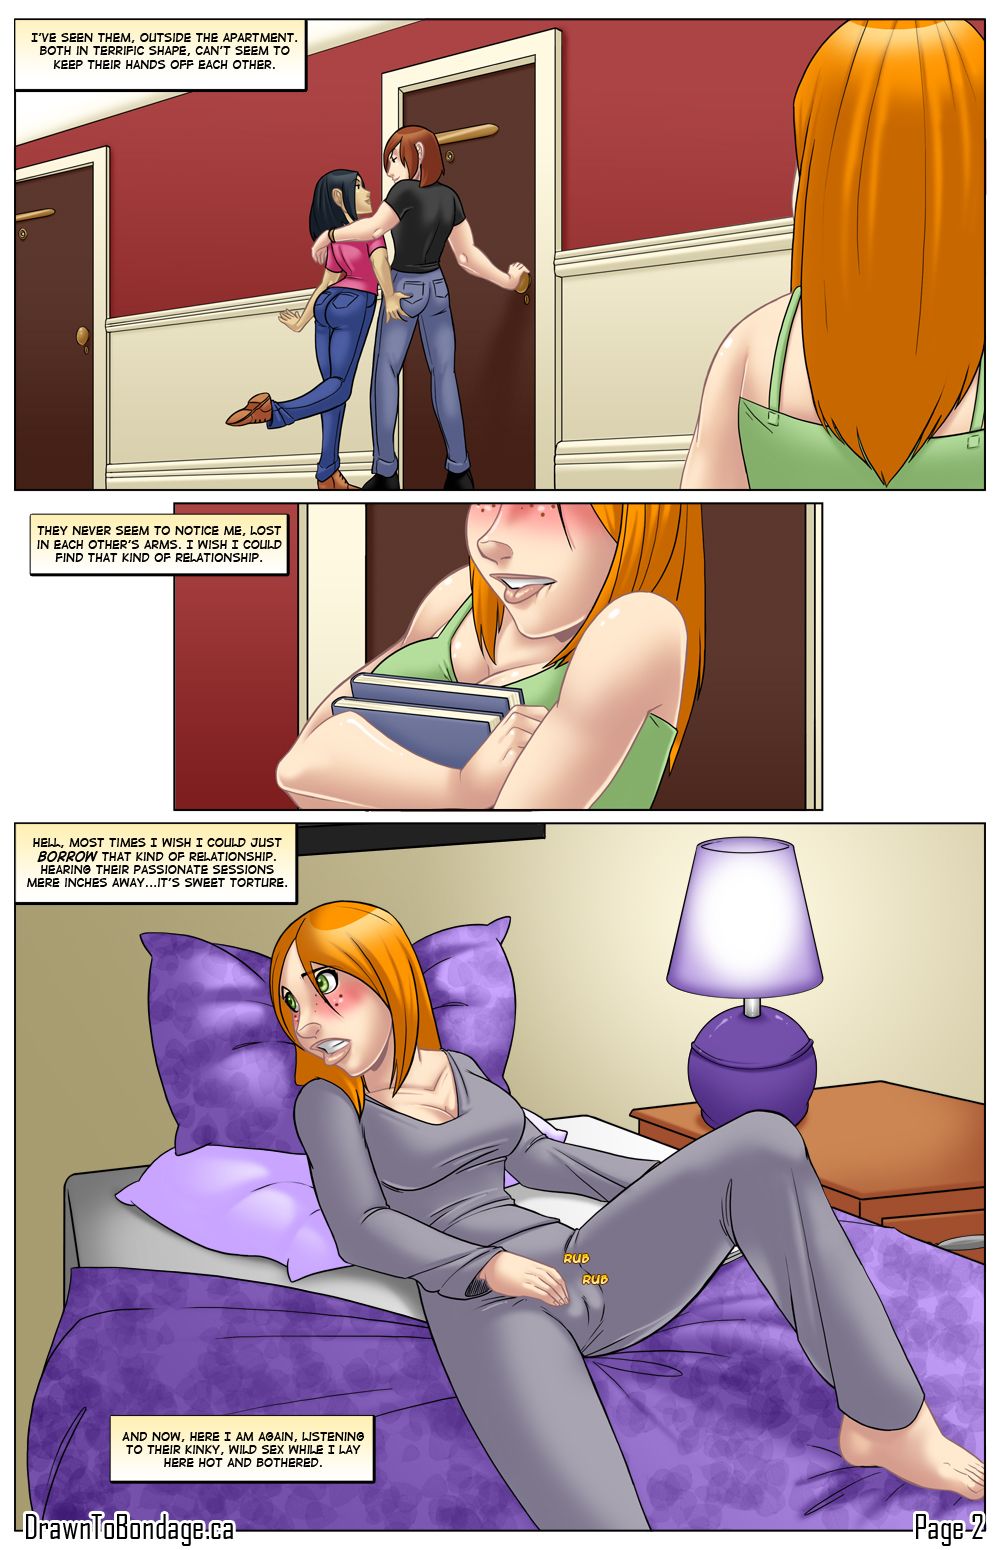 热 性虐待 漫画 与 红发女郎 增加 通过 黑暗 青少年 女孩